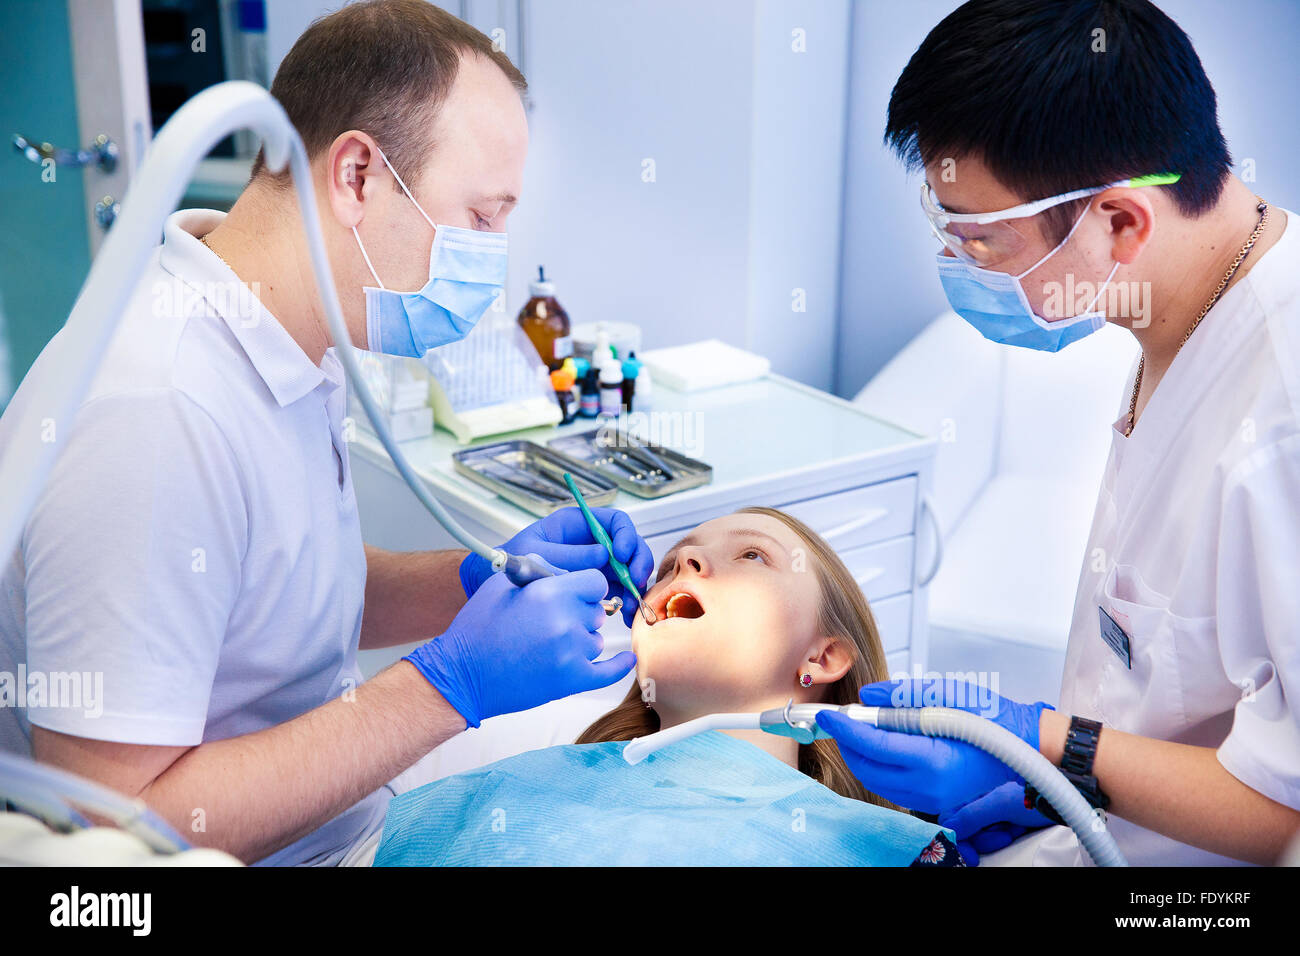 dentist treats teeth Stock Photo